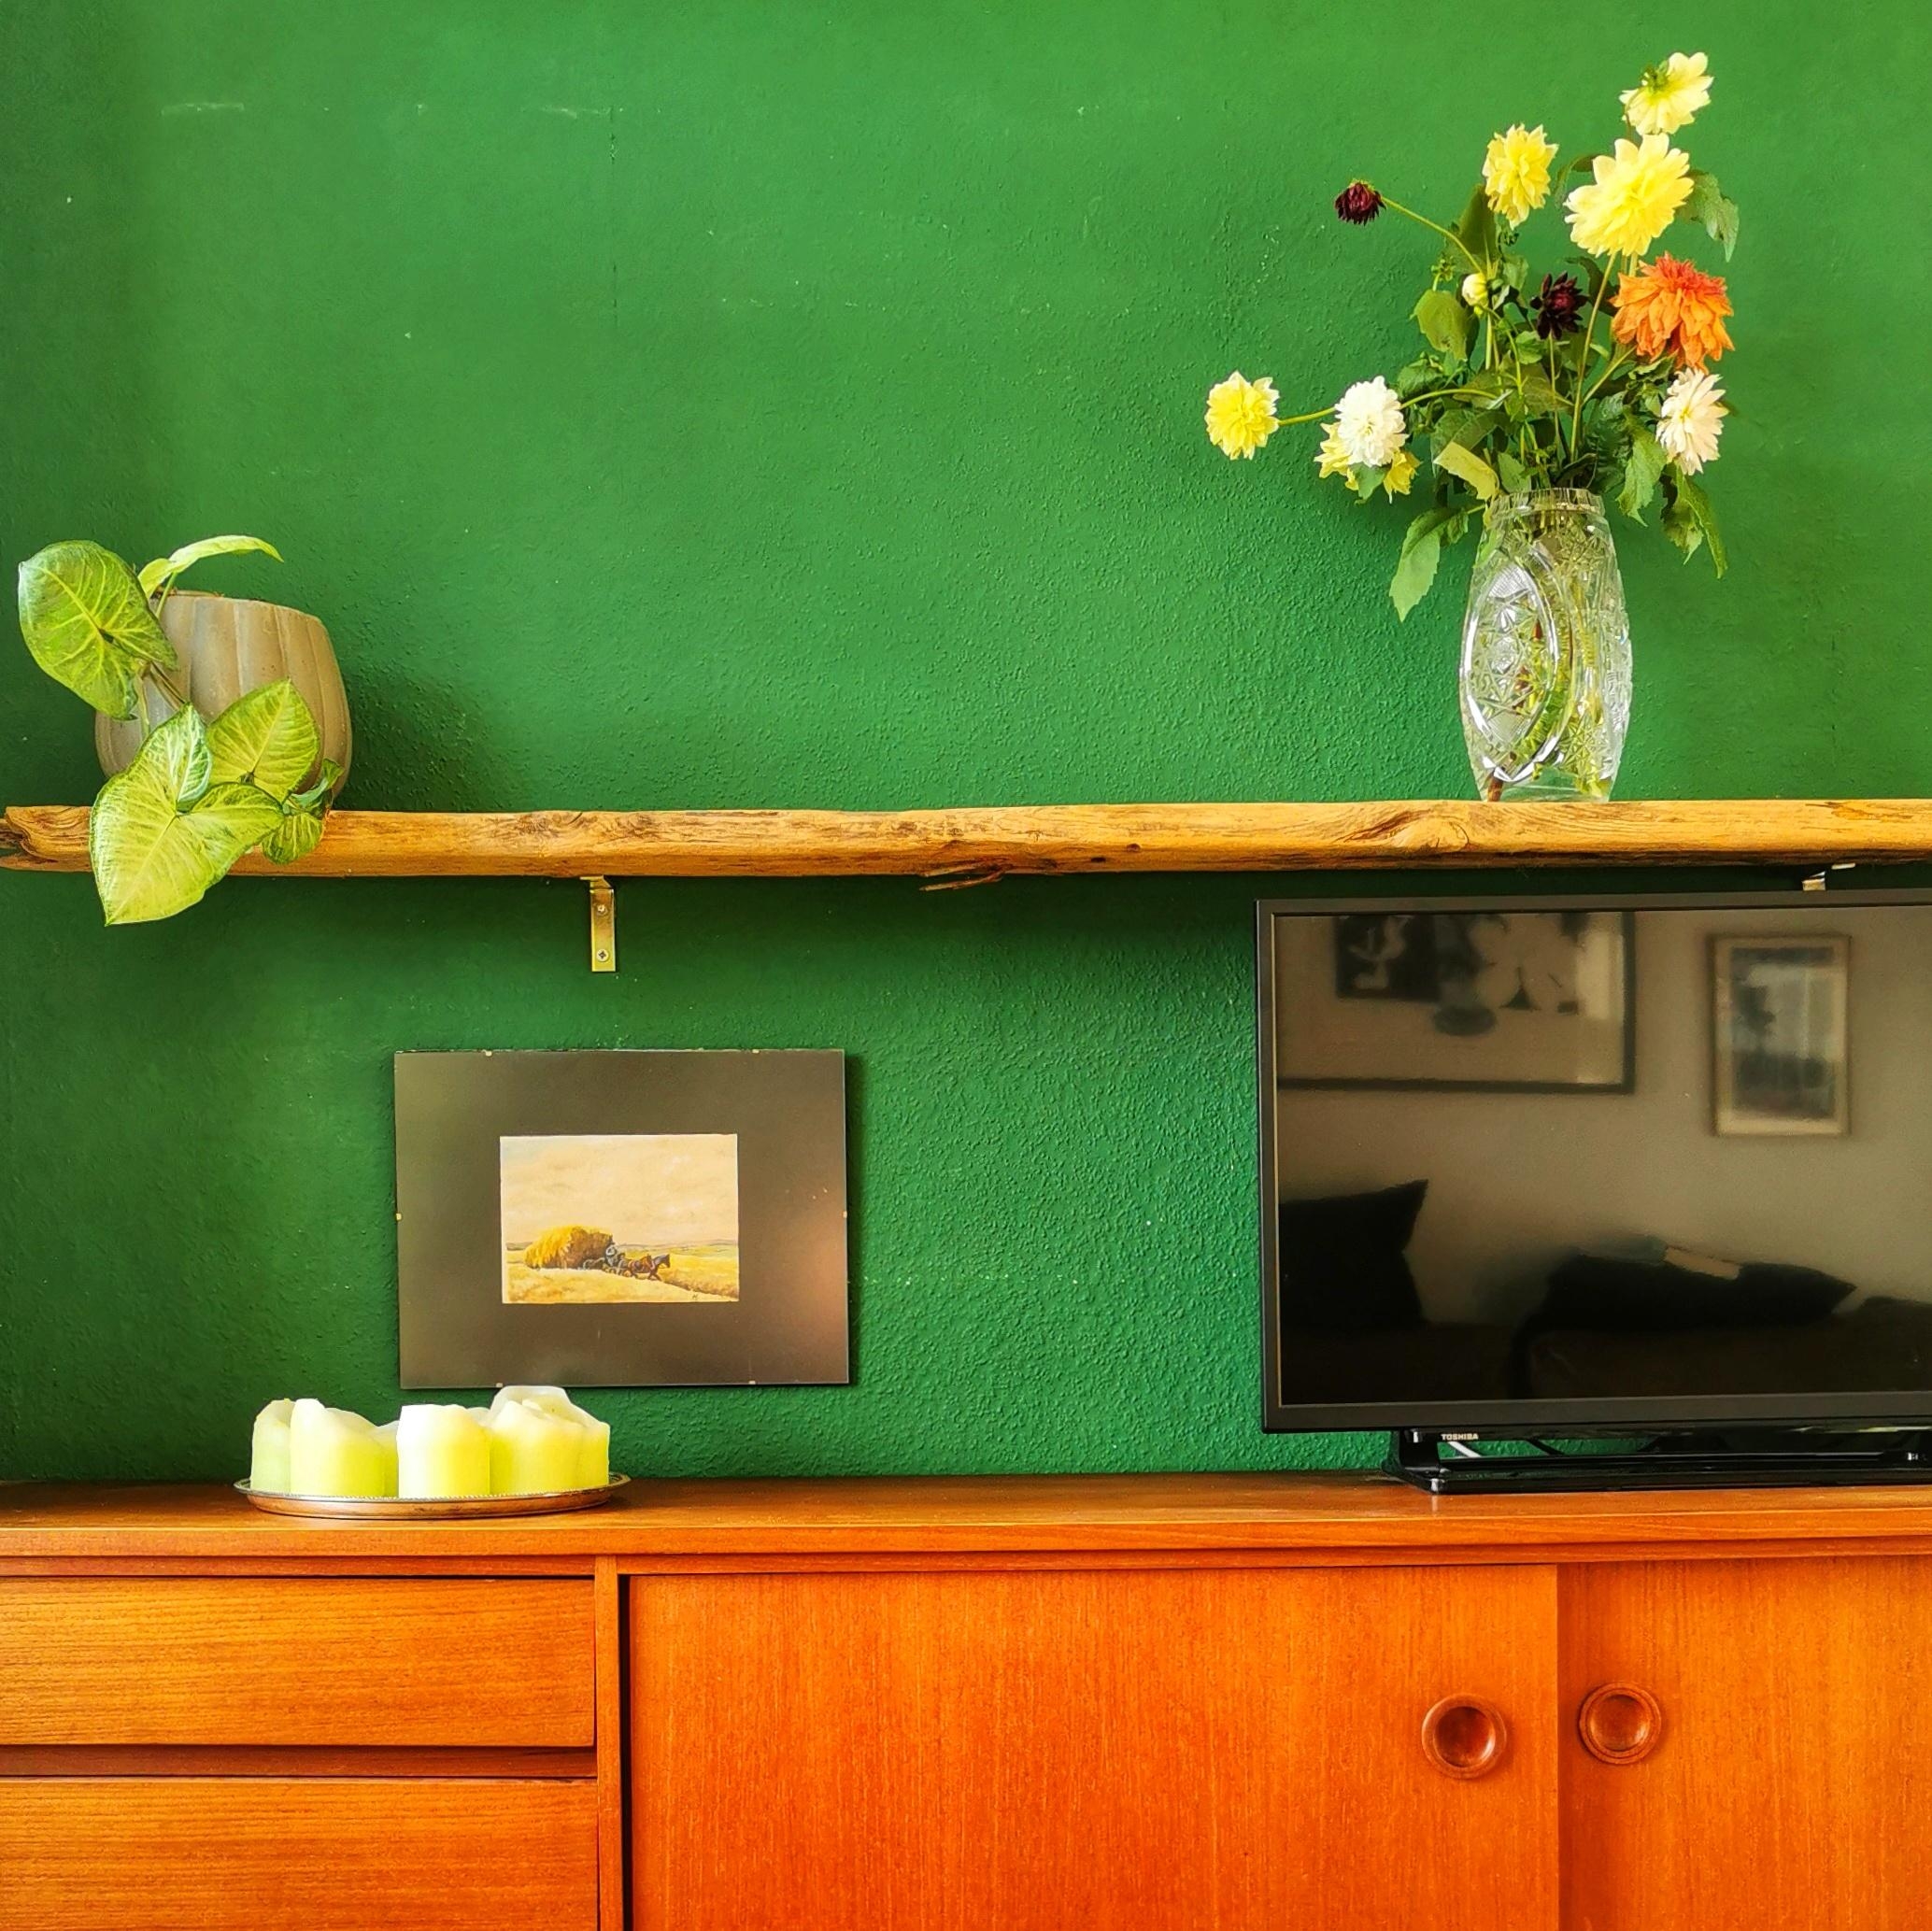 Grünes Wohnzimmer

#cheers2green #vasenmittwoch #dahlien #danishdesign #danishfurniture #vintagefurniture #vintagehomede